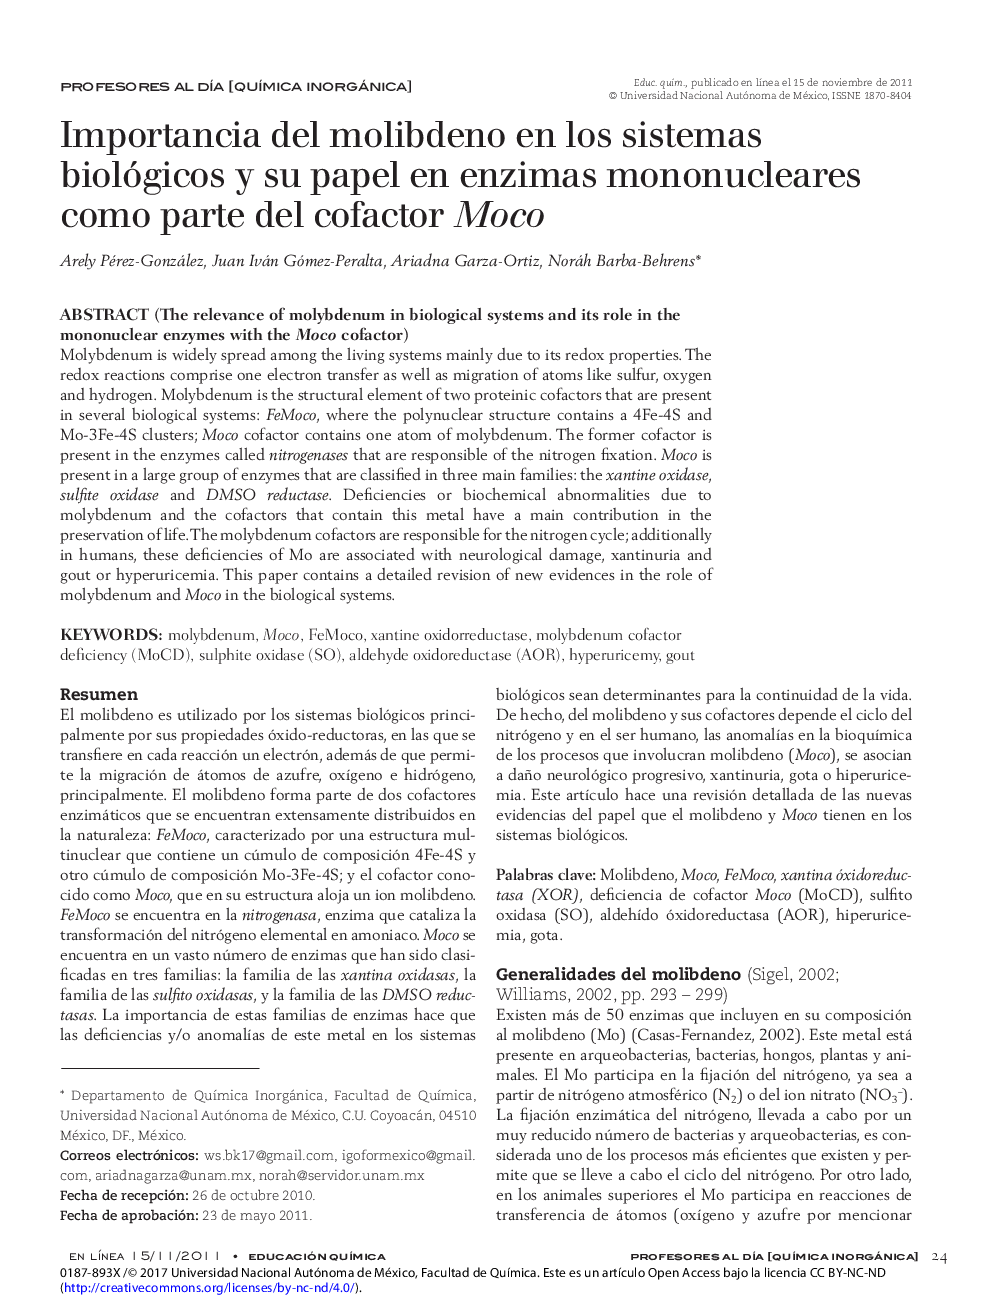 Importancia del molibdeno en los sistemas biológicos y su papel en enzimas mononucleares como parte del cofactor Moco